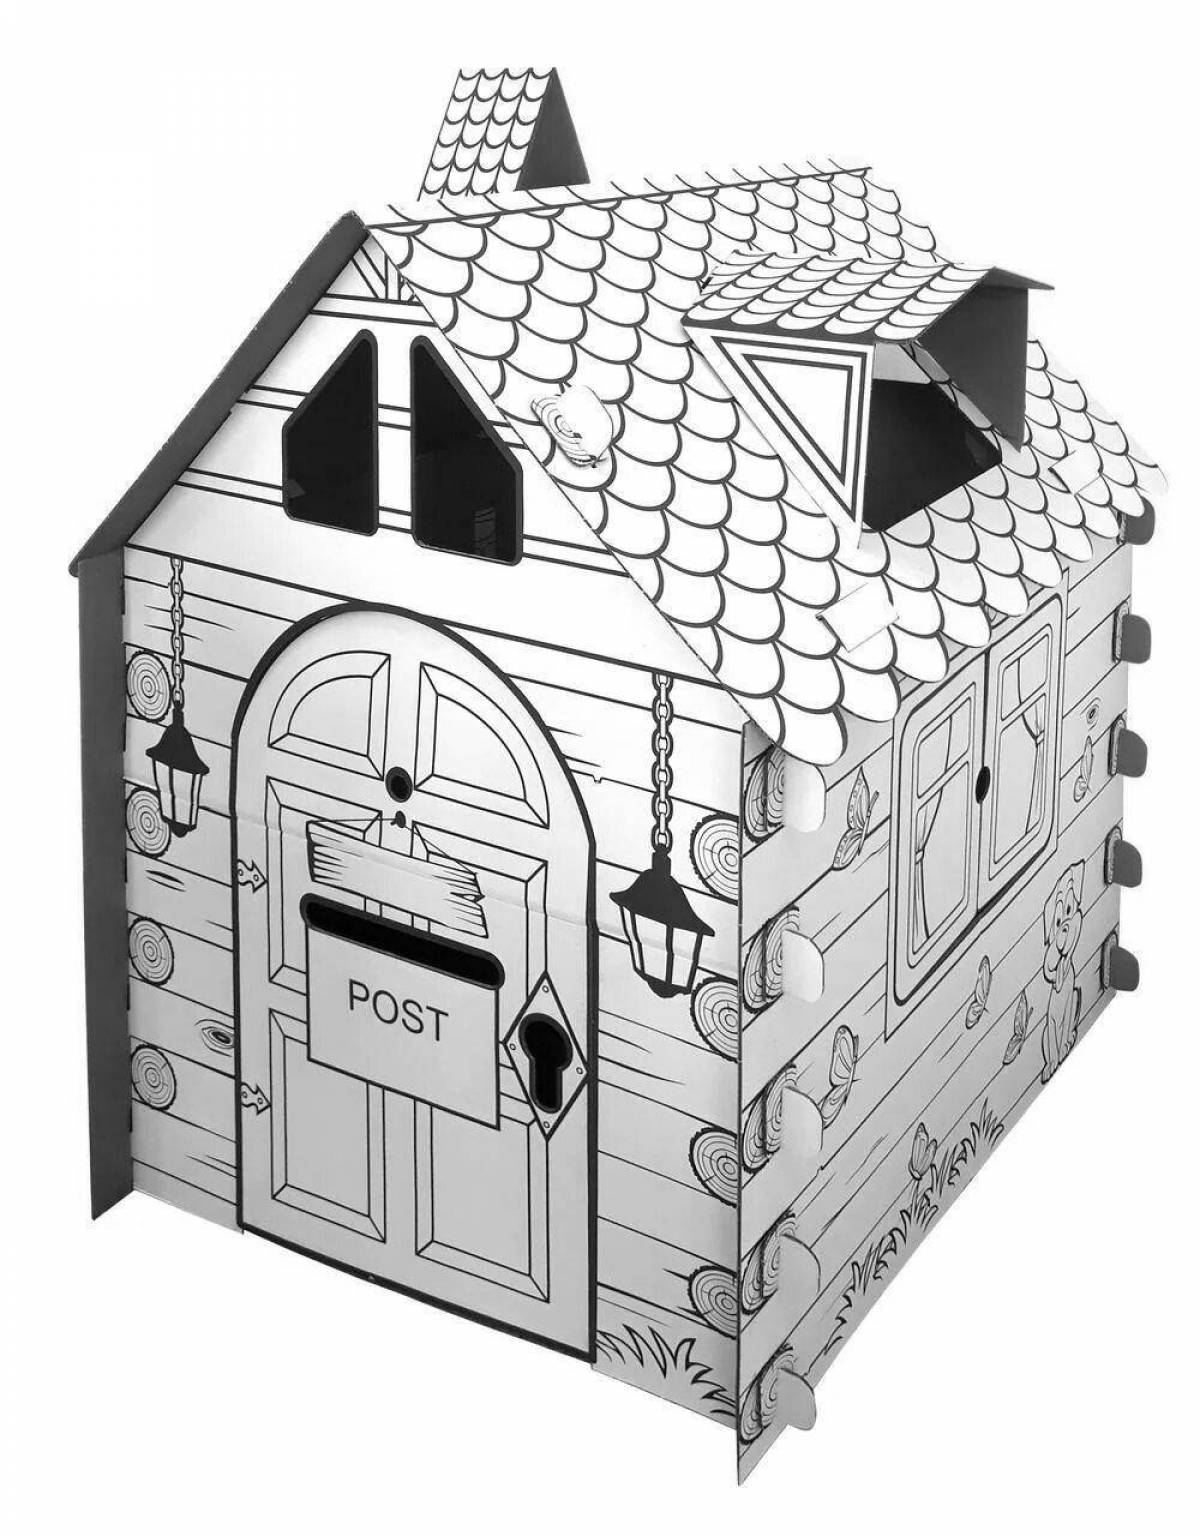 Великолепная раскраска картонного домика для детей